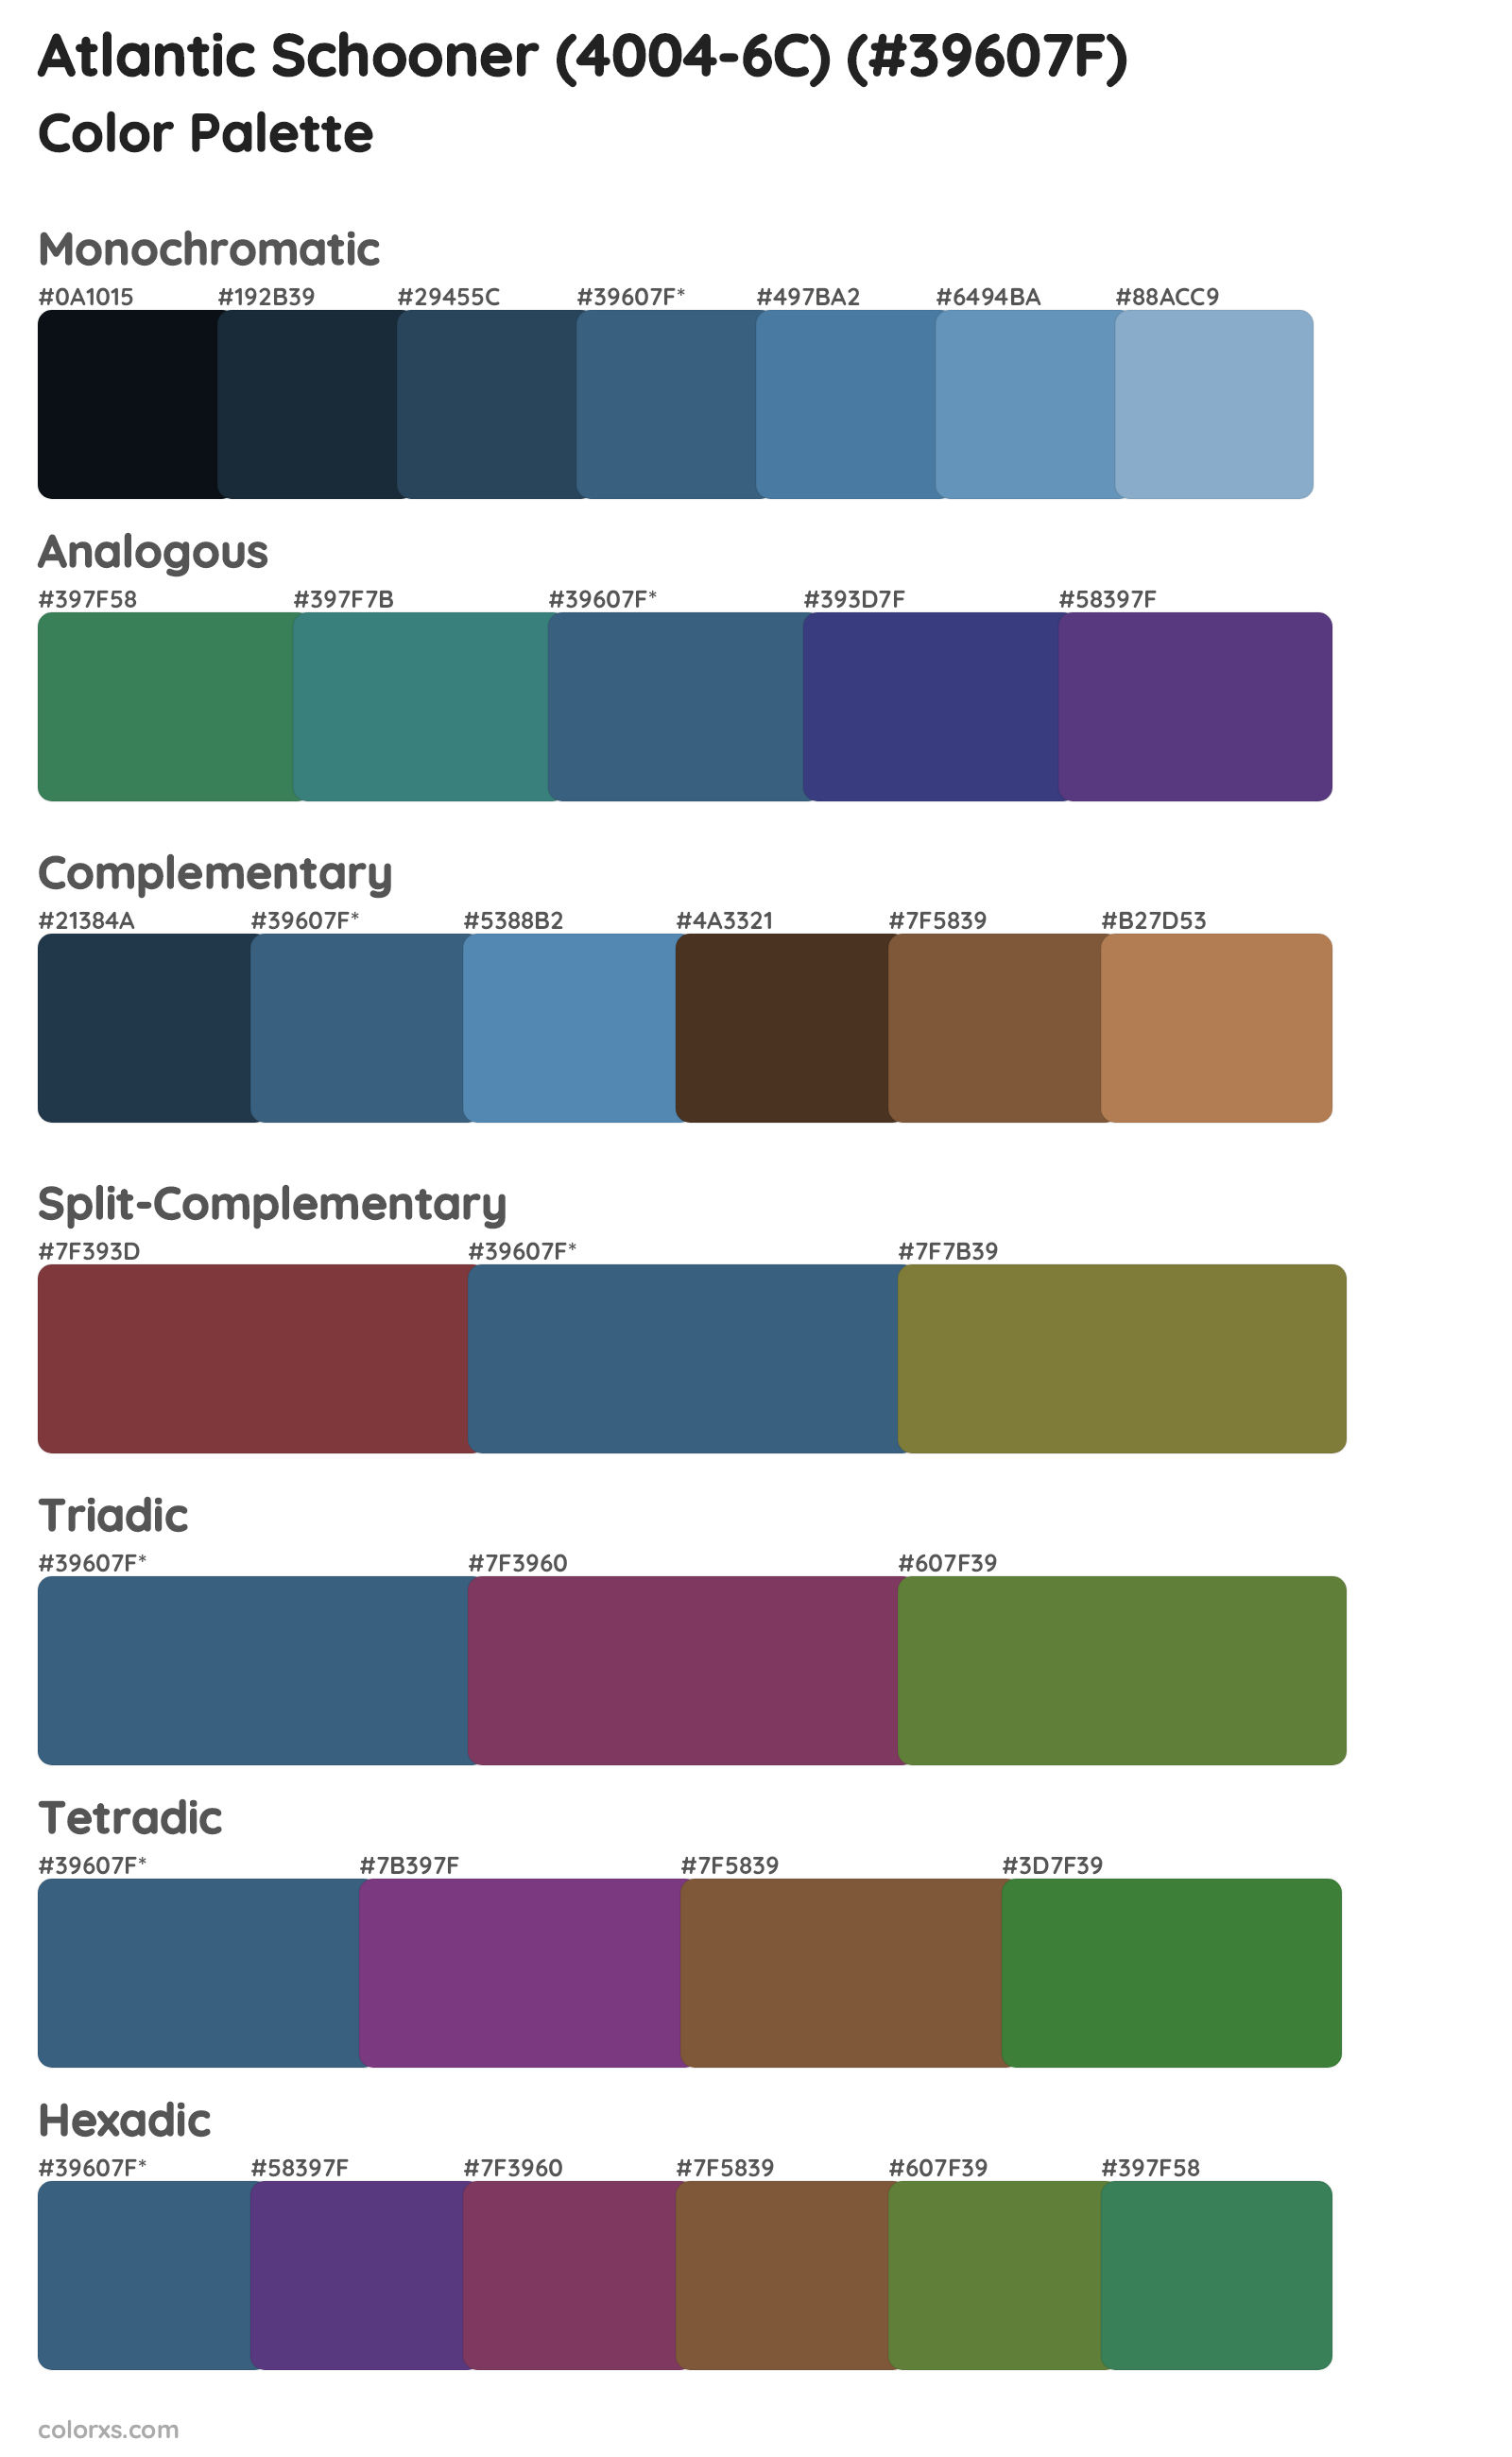 Atlantic Schooner (4004-6C) Color Scheme Palettes